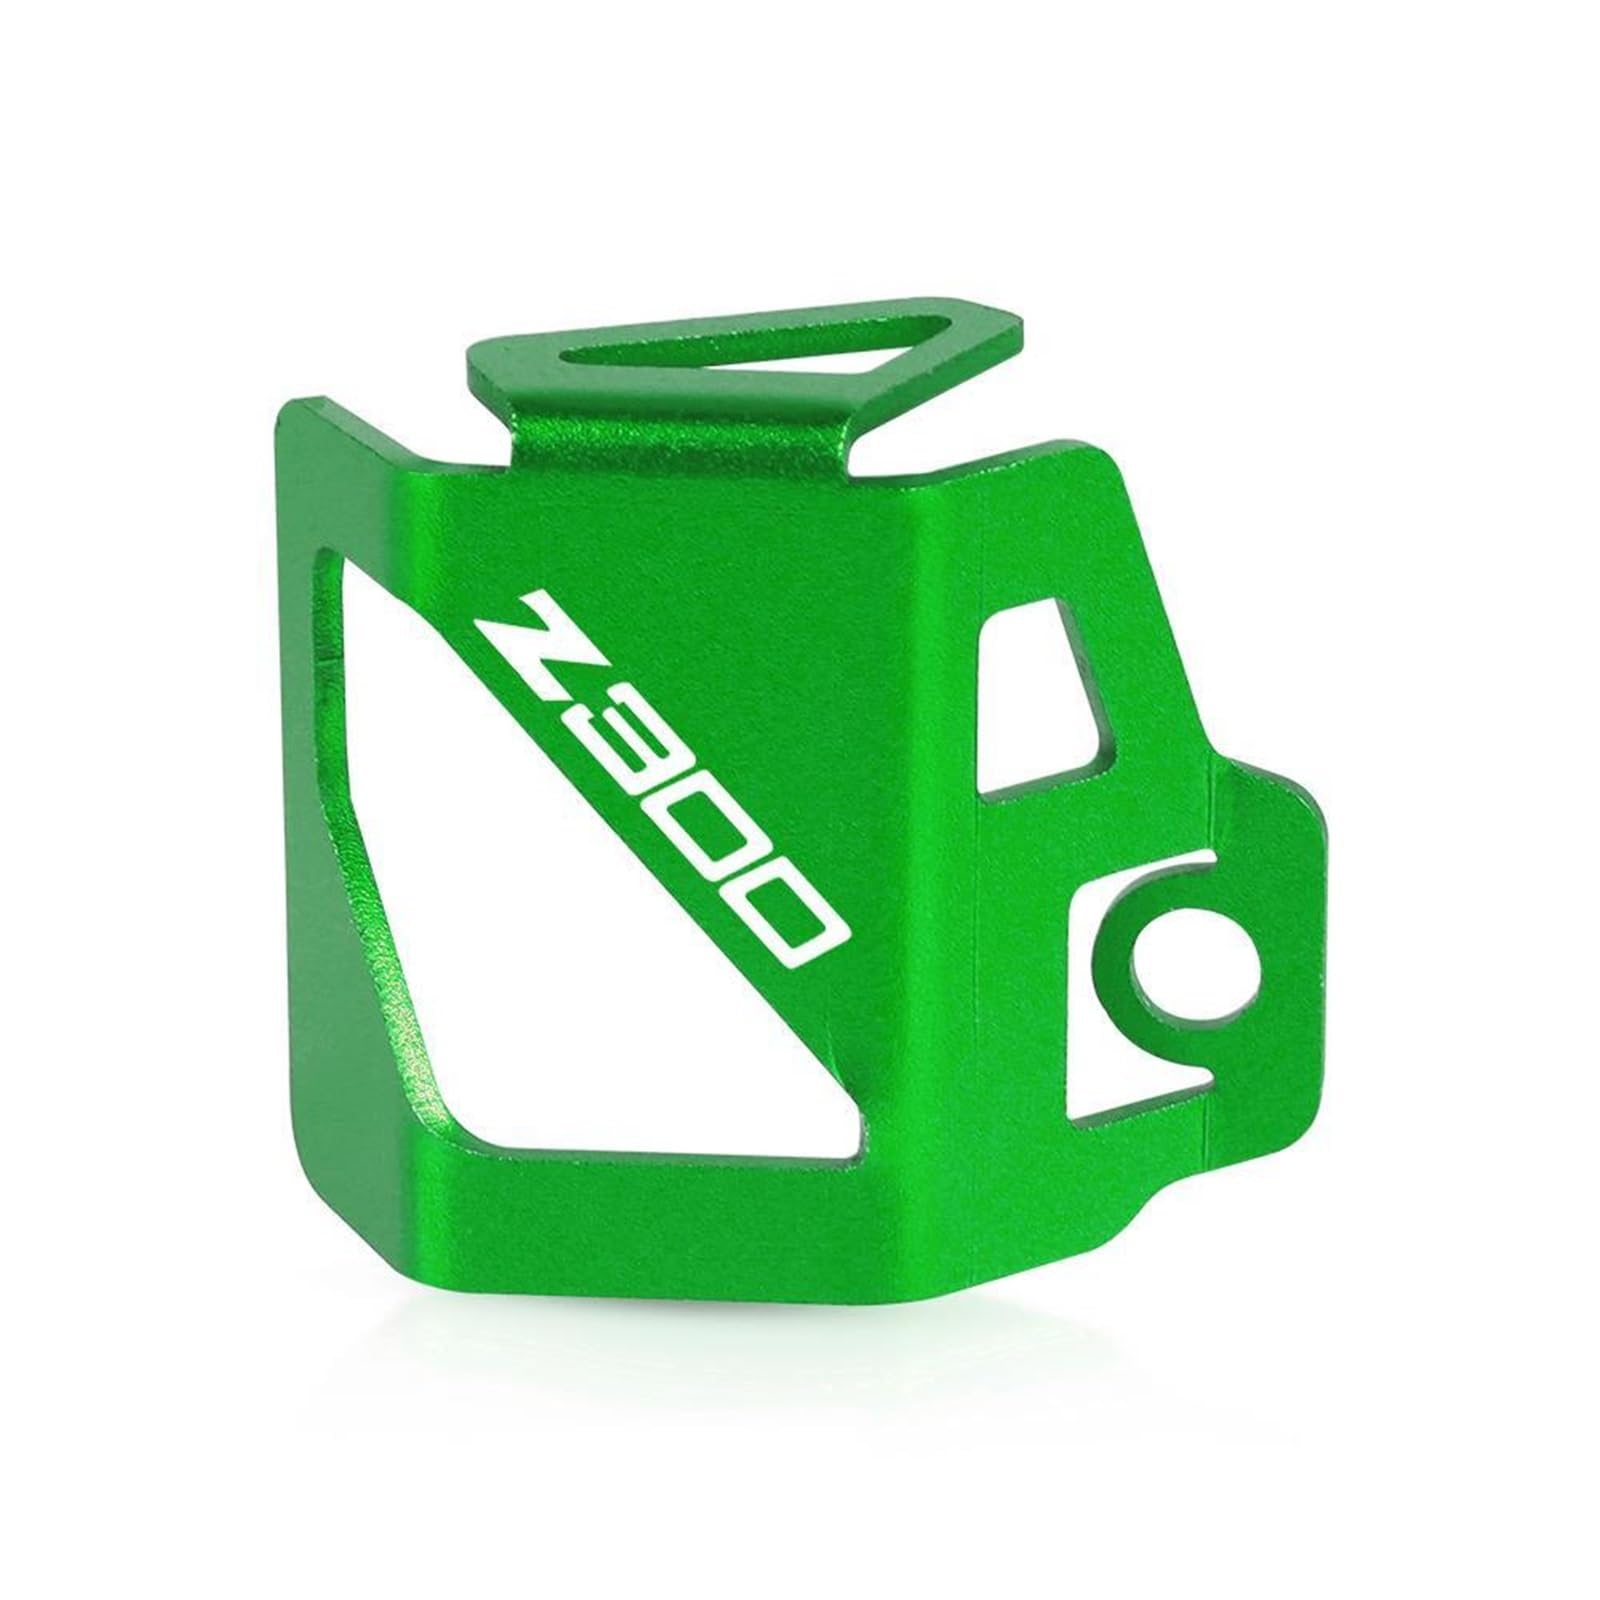 PINNKL Motorrad Hinten Bremsflüssigkeitsbehälter Abdeckung Schutzfolie Für Kawasaki Z400 Z300 Z900 Versys X300 300 (Farbe : Z300 Green, Größe : 1) von PINNKL